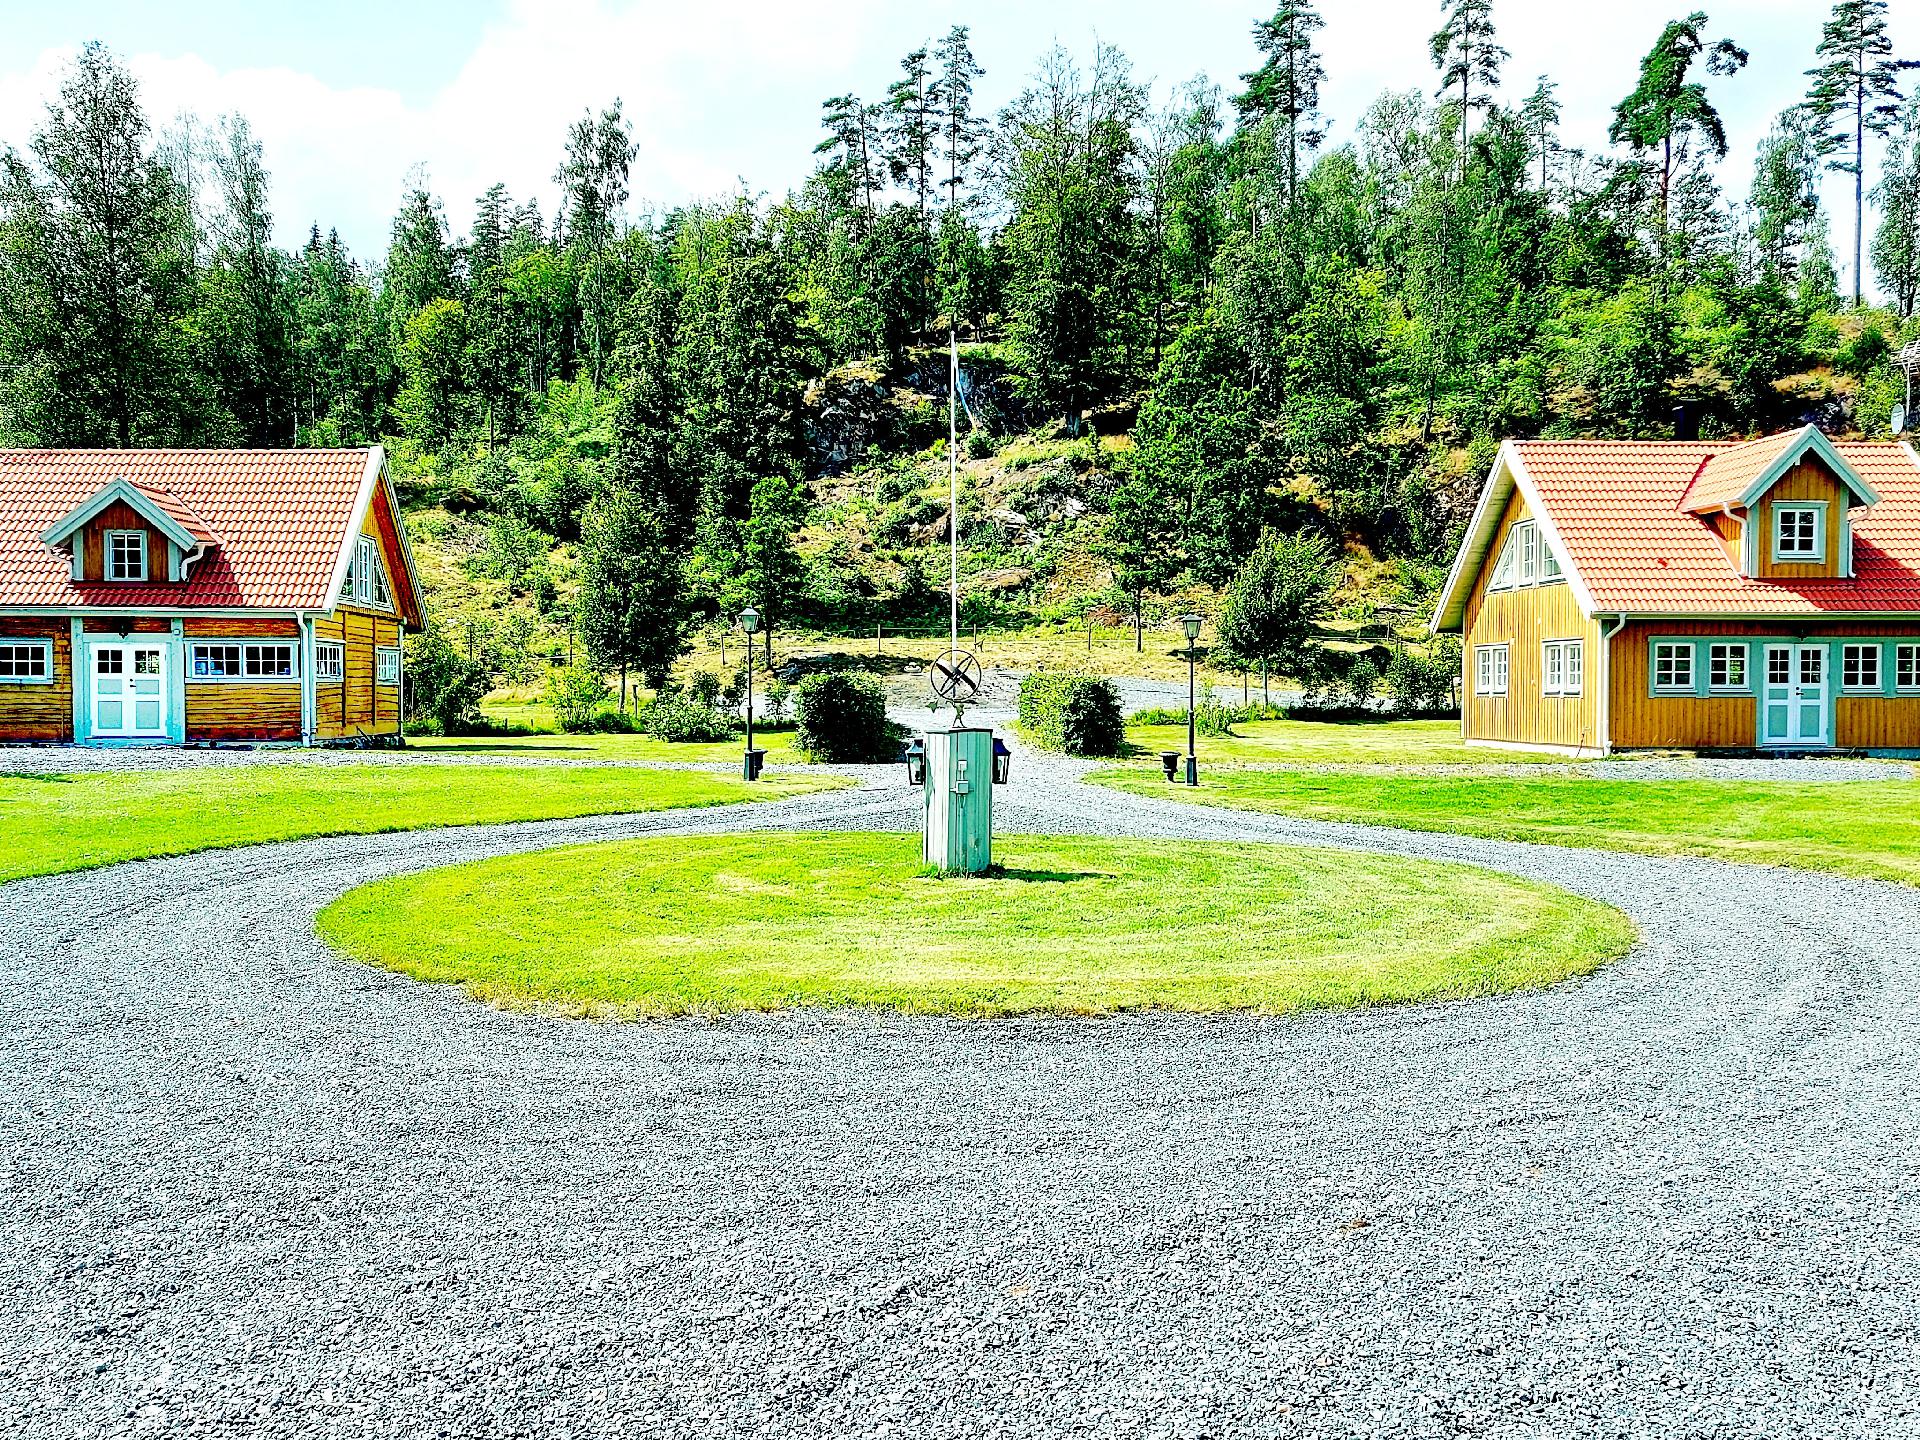 Ferienhaus in Vetlanda mit Großem Garten  in Schweden